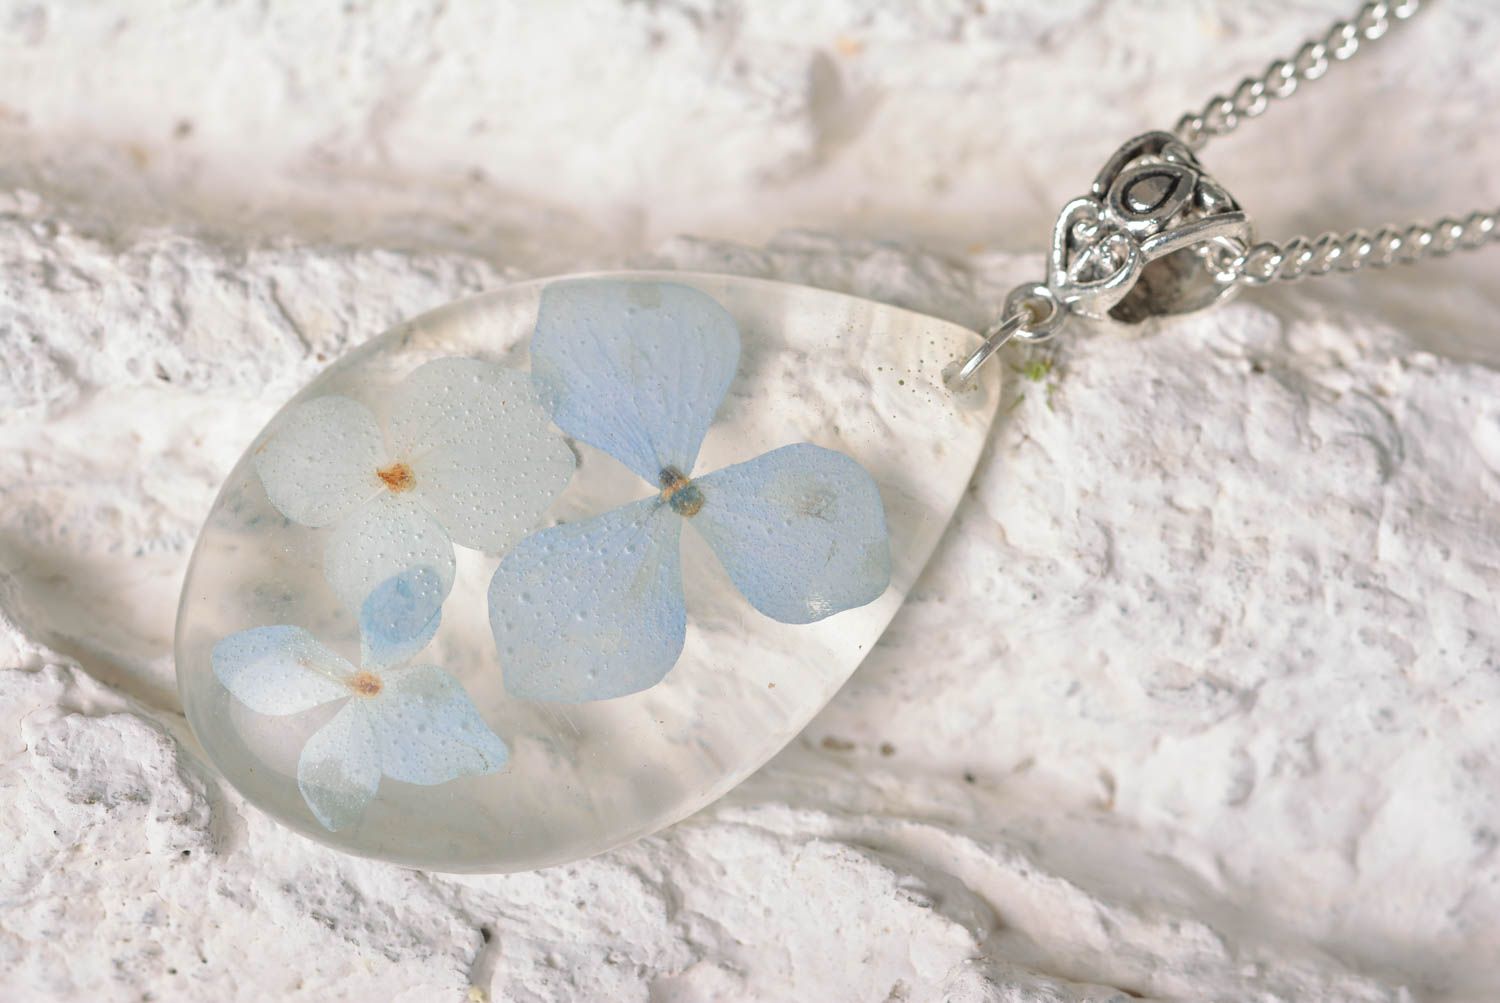 Stylish botanic pendant handmade pendant with natural flowers botanic jewelry photo 1